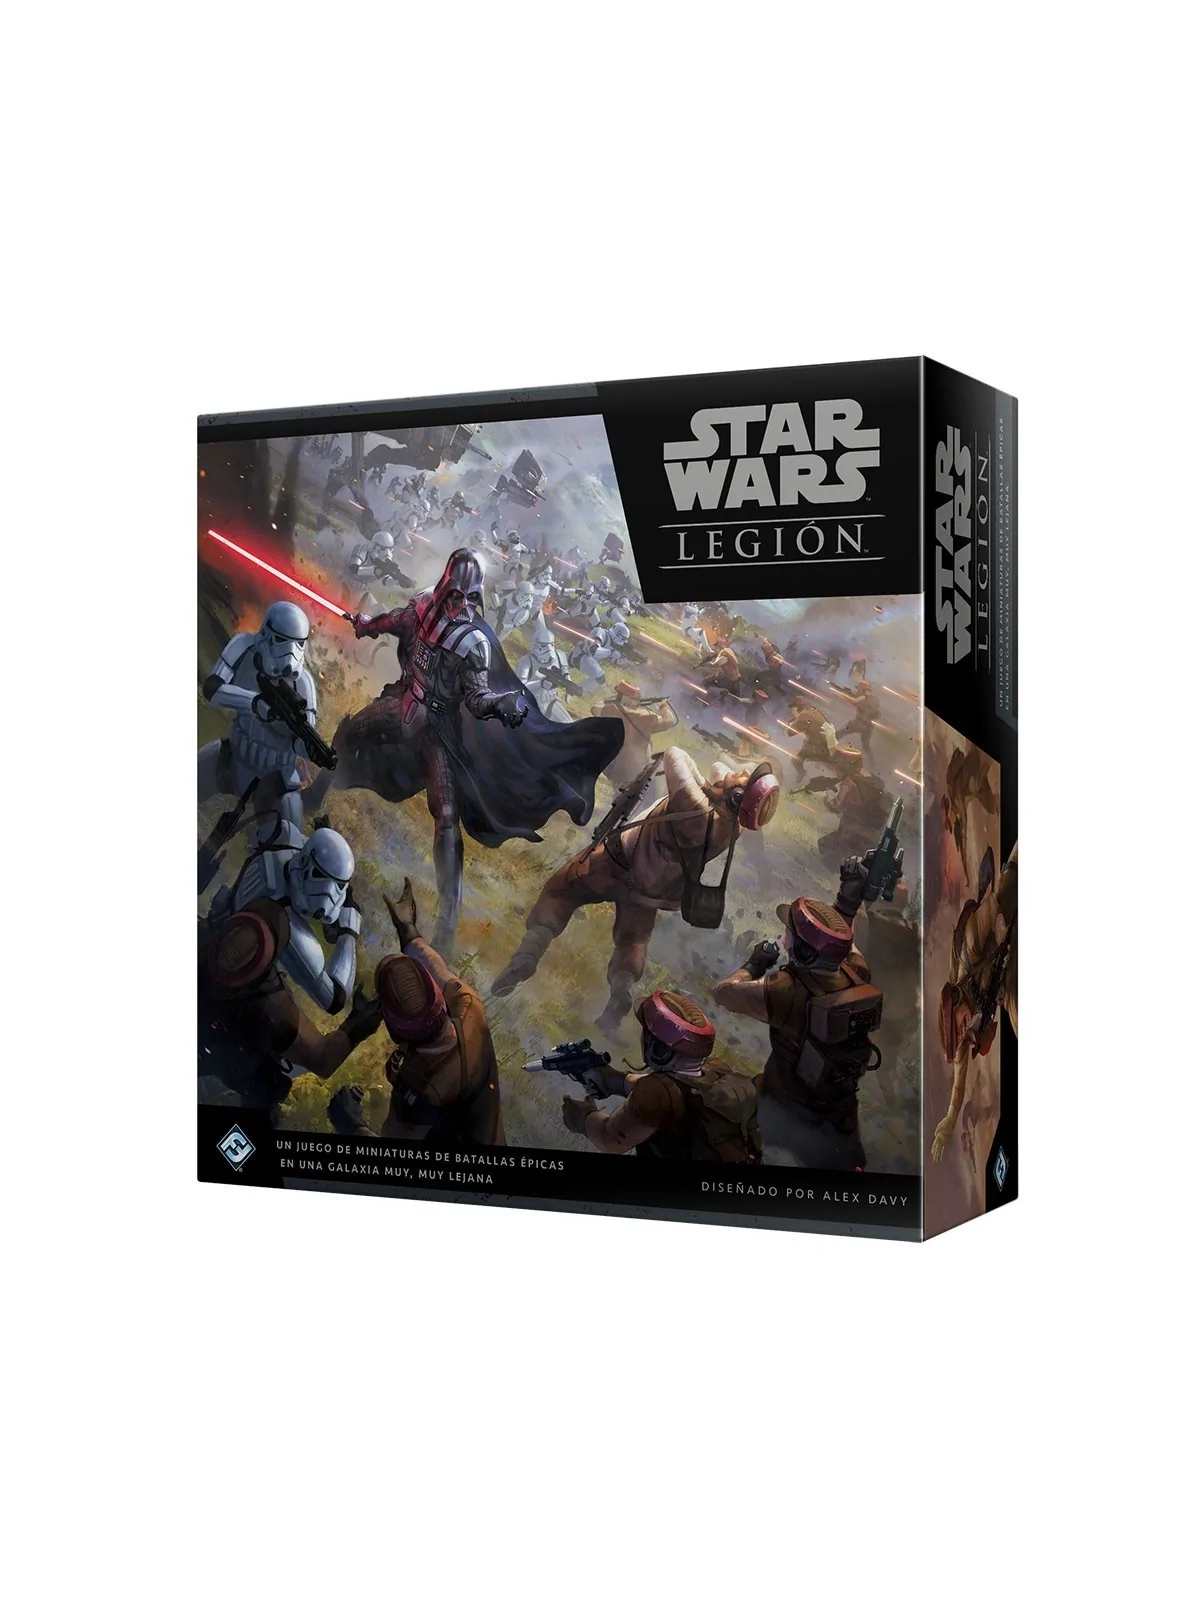 Comprar Star Wars Legión: Caja Básica barato al mejor precio 107,99 € 